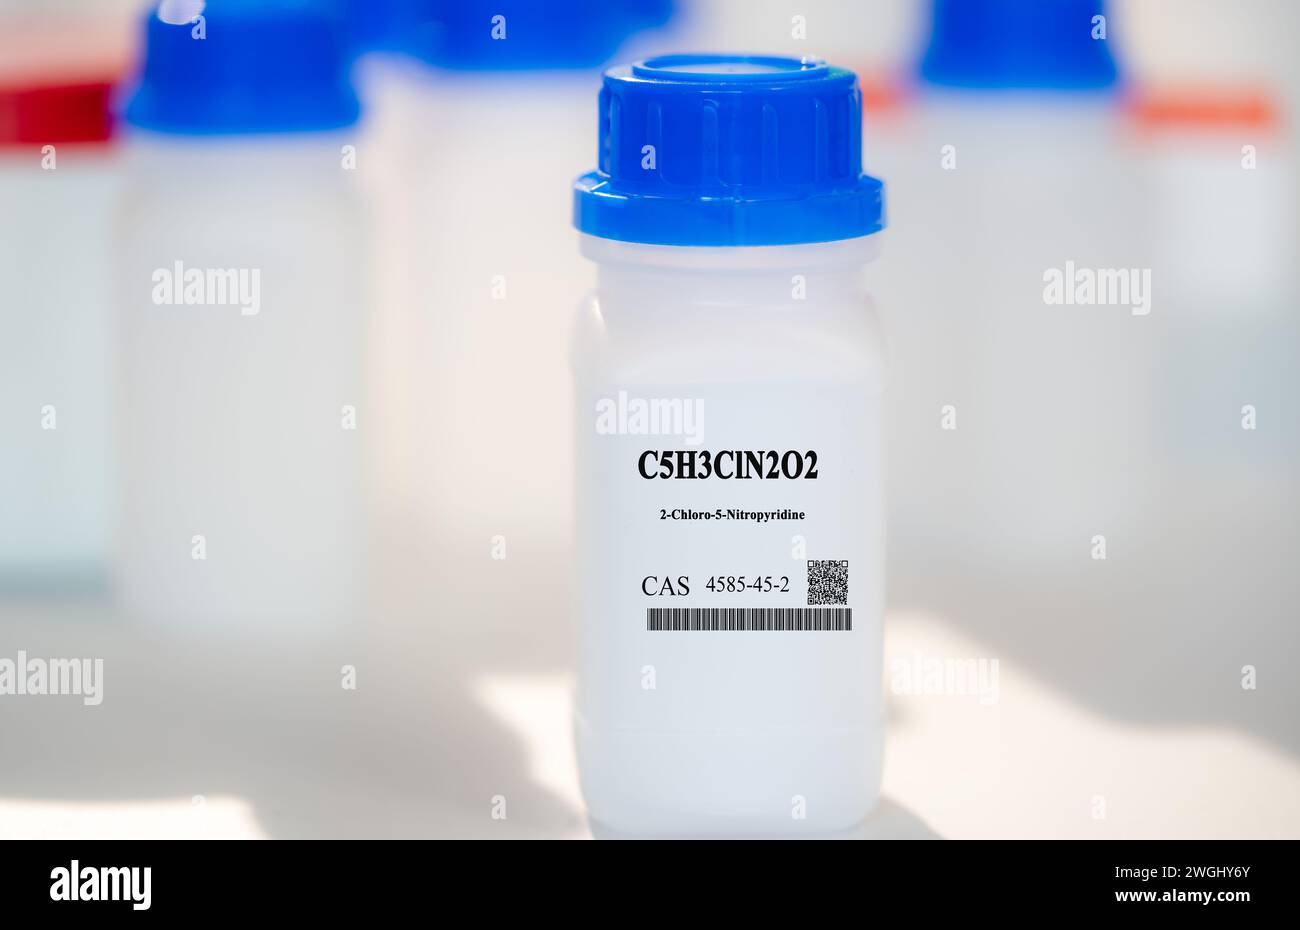 C5H3ClN2O2 2-cloro-5-nitropyridine CAS 4585-45-2 sustancia química en envases de laboratorio de plástico blanco Foto de stock